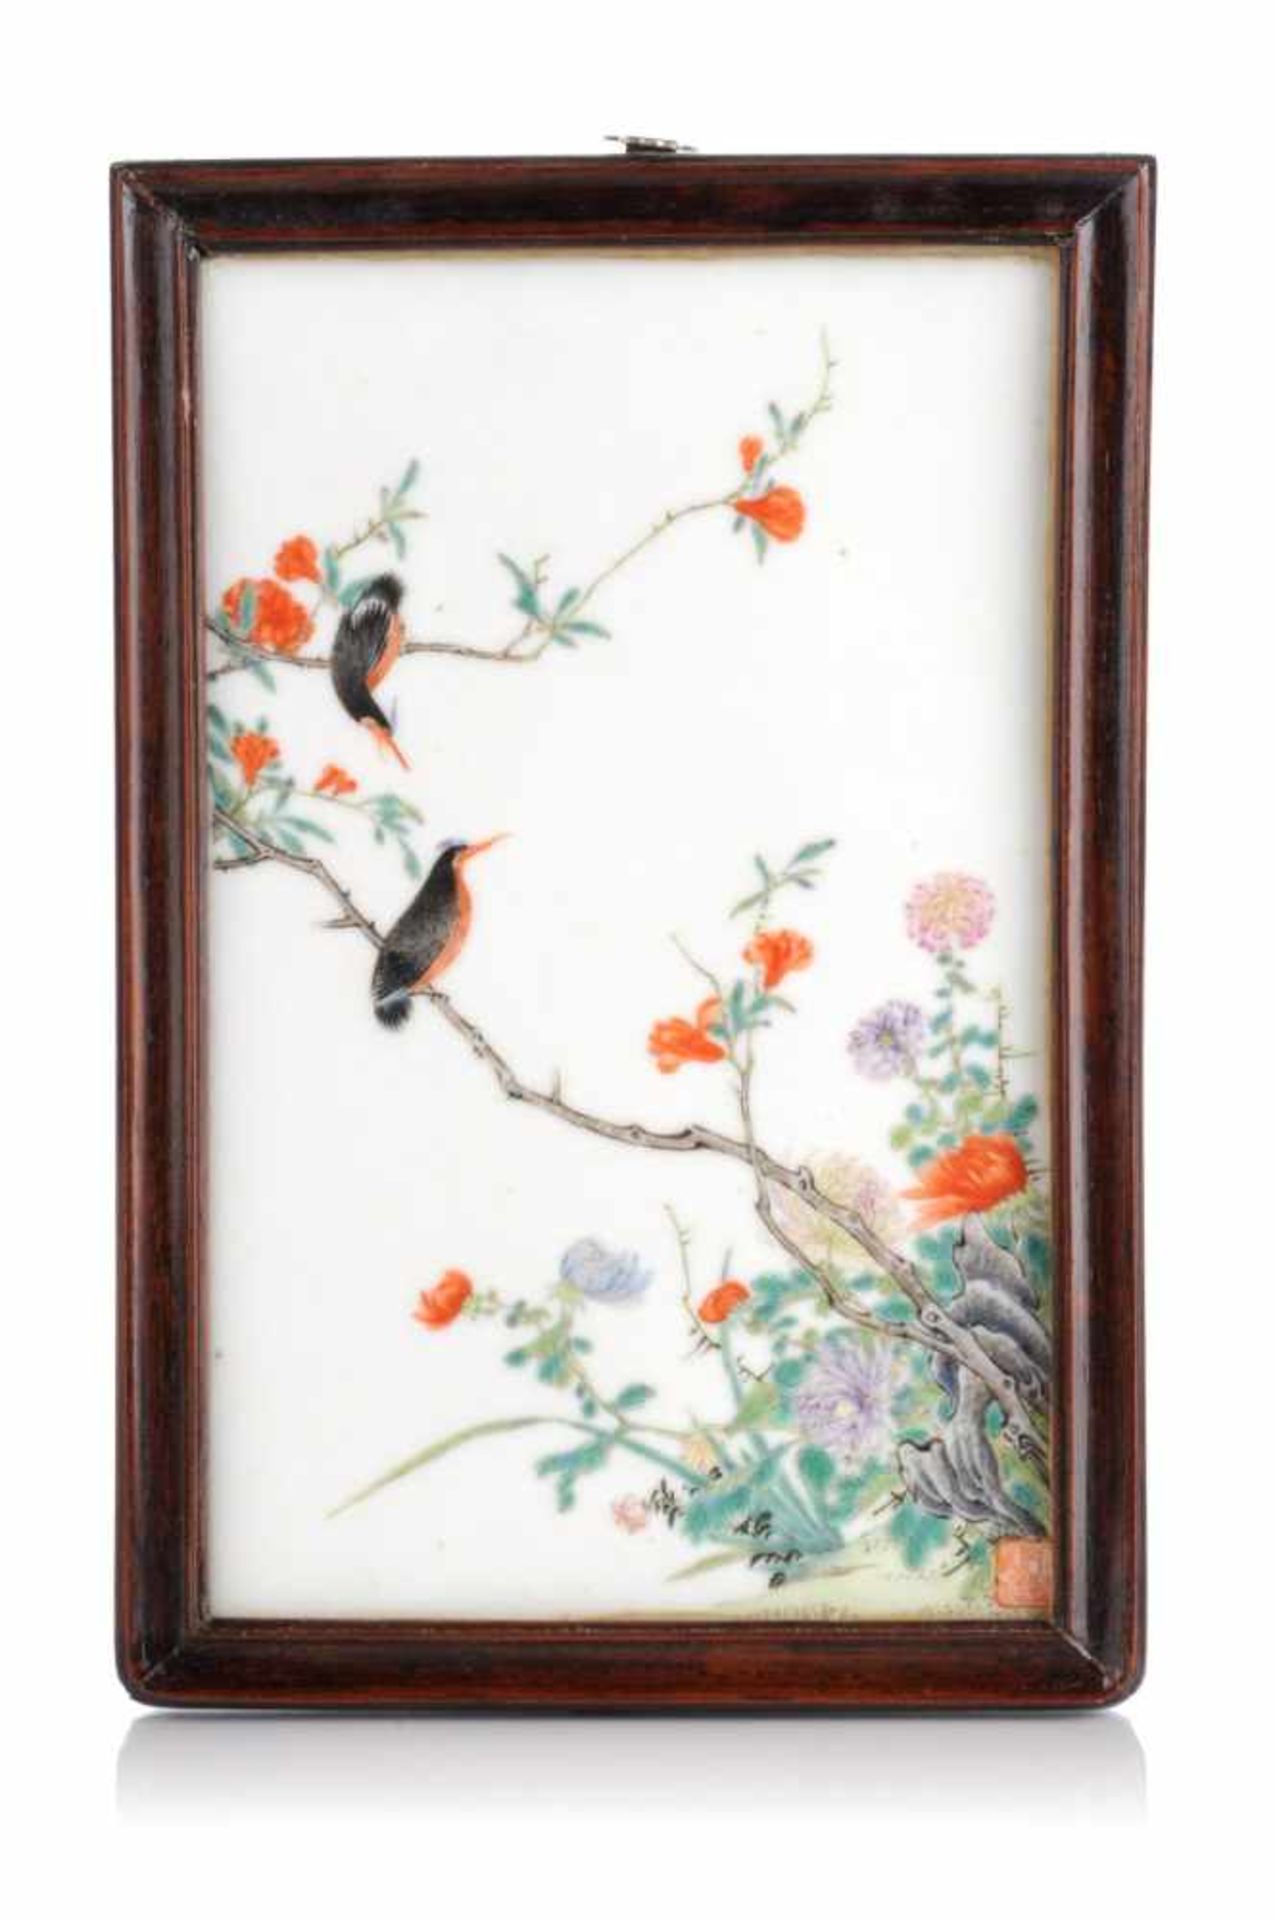 Bildplatte mit Vogel auf Zweig. Wohl China. 19. Jh./20. Jh.Porzellan, glasiert und in polychromen